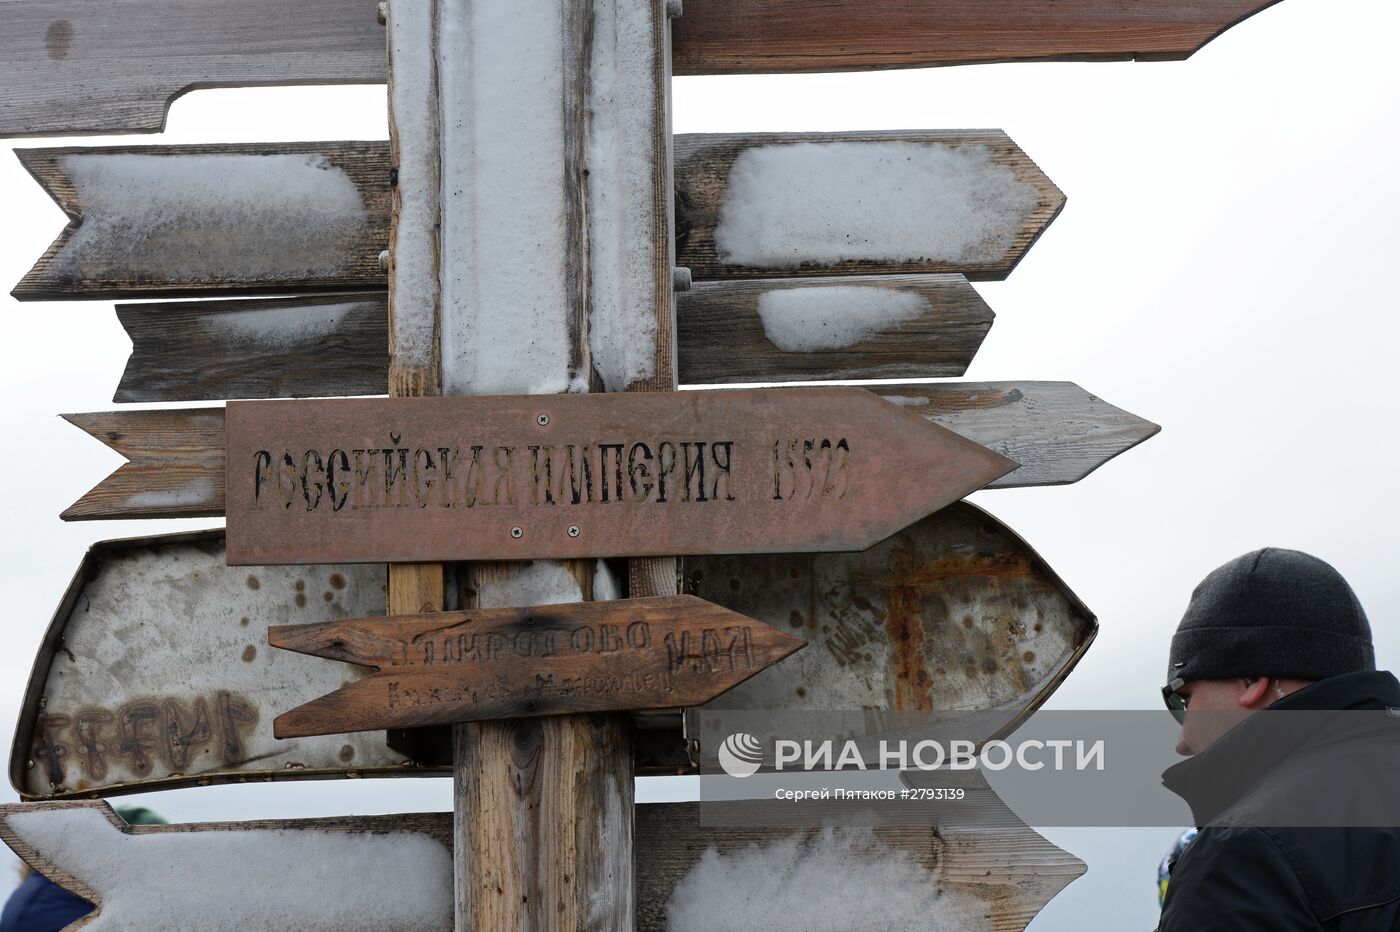 Визит патриарха Московского и всея Руси Кирилла на российскую полярную станцию в Антарктиде